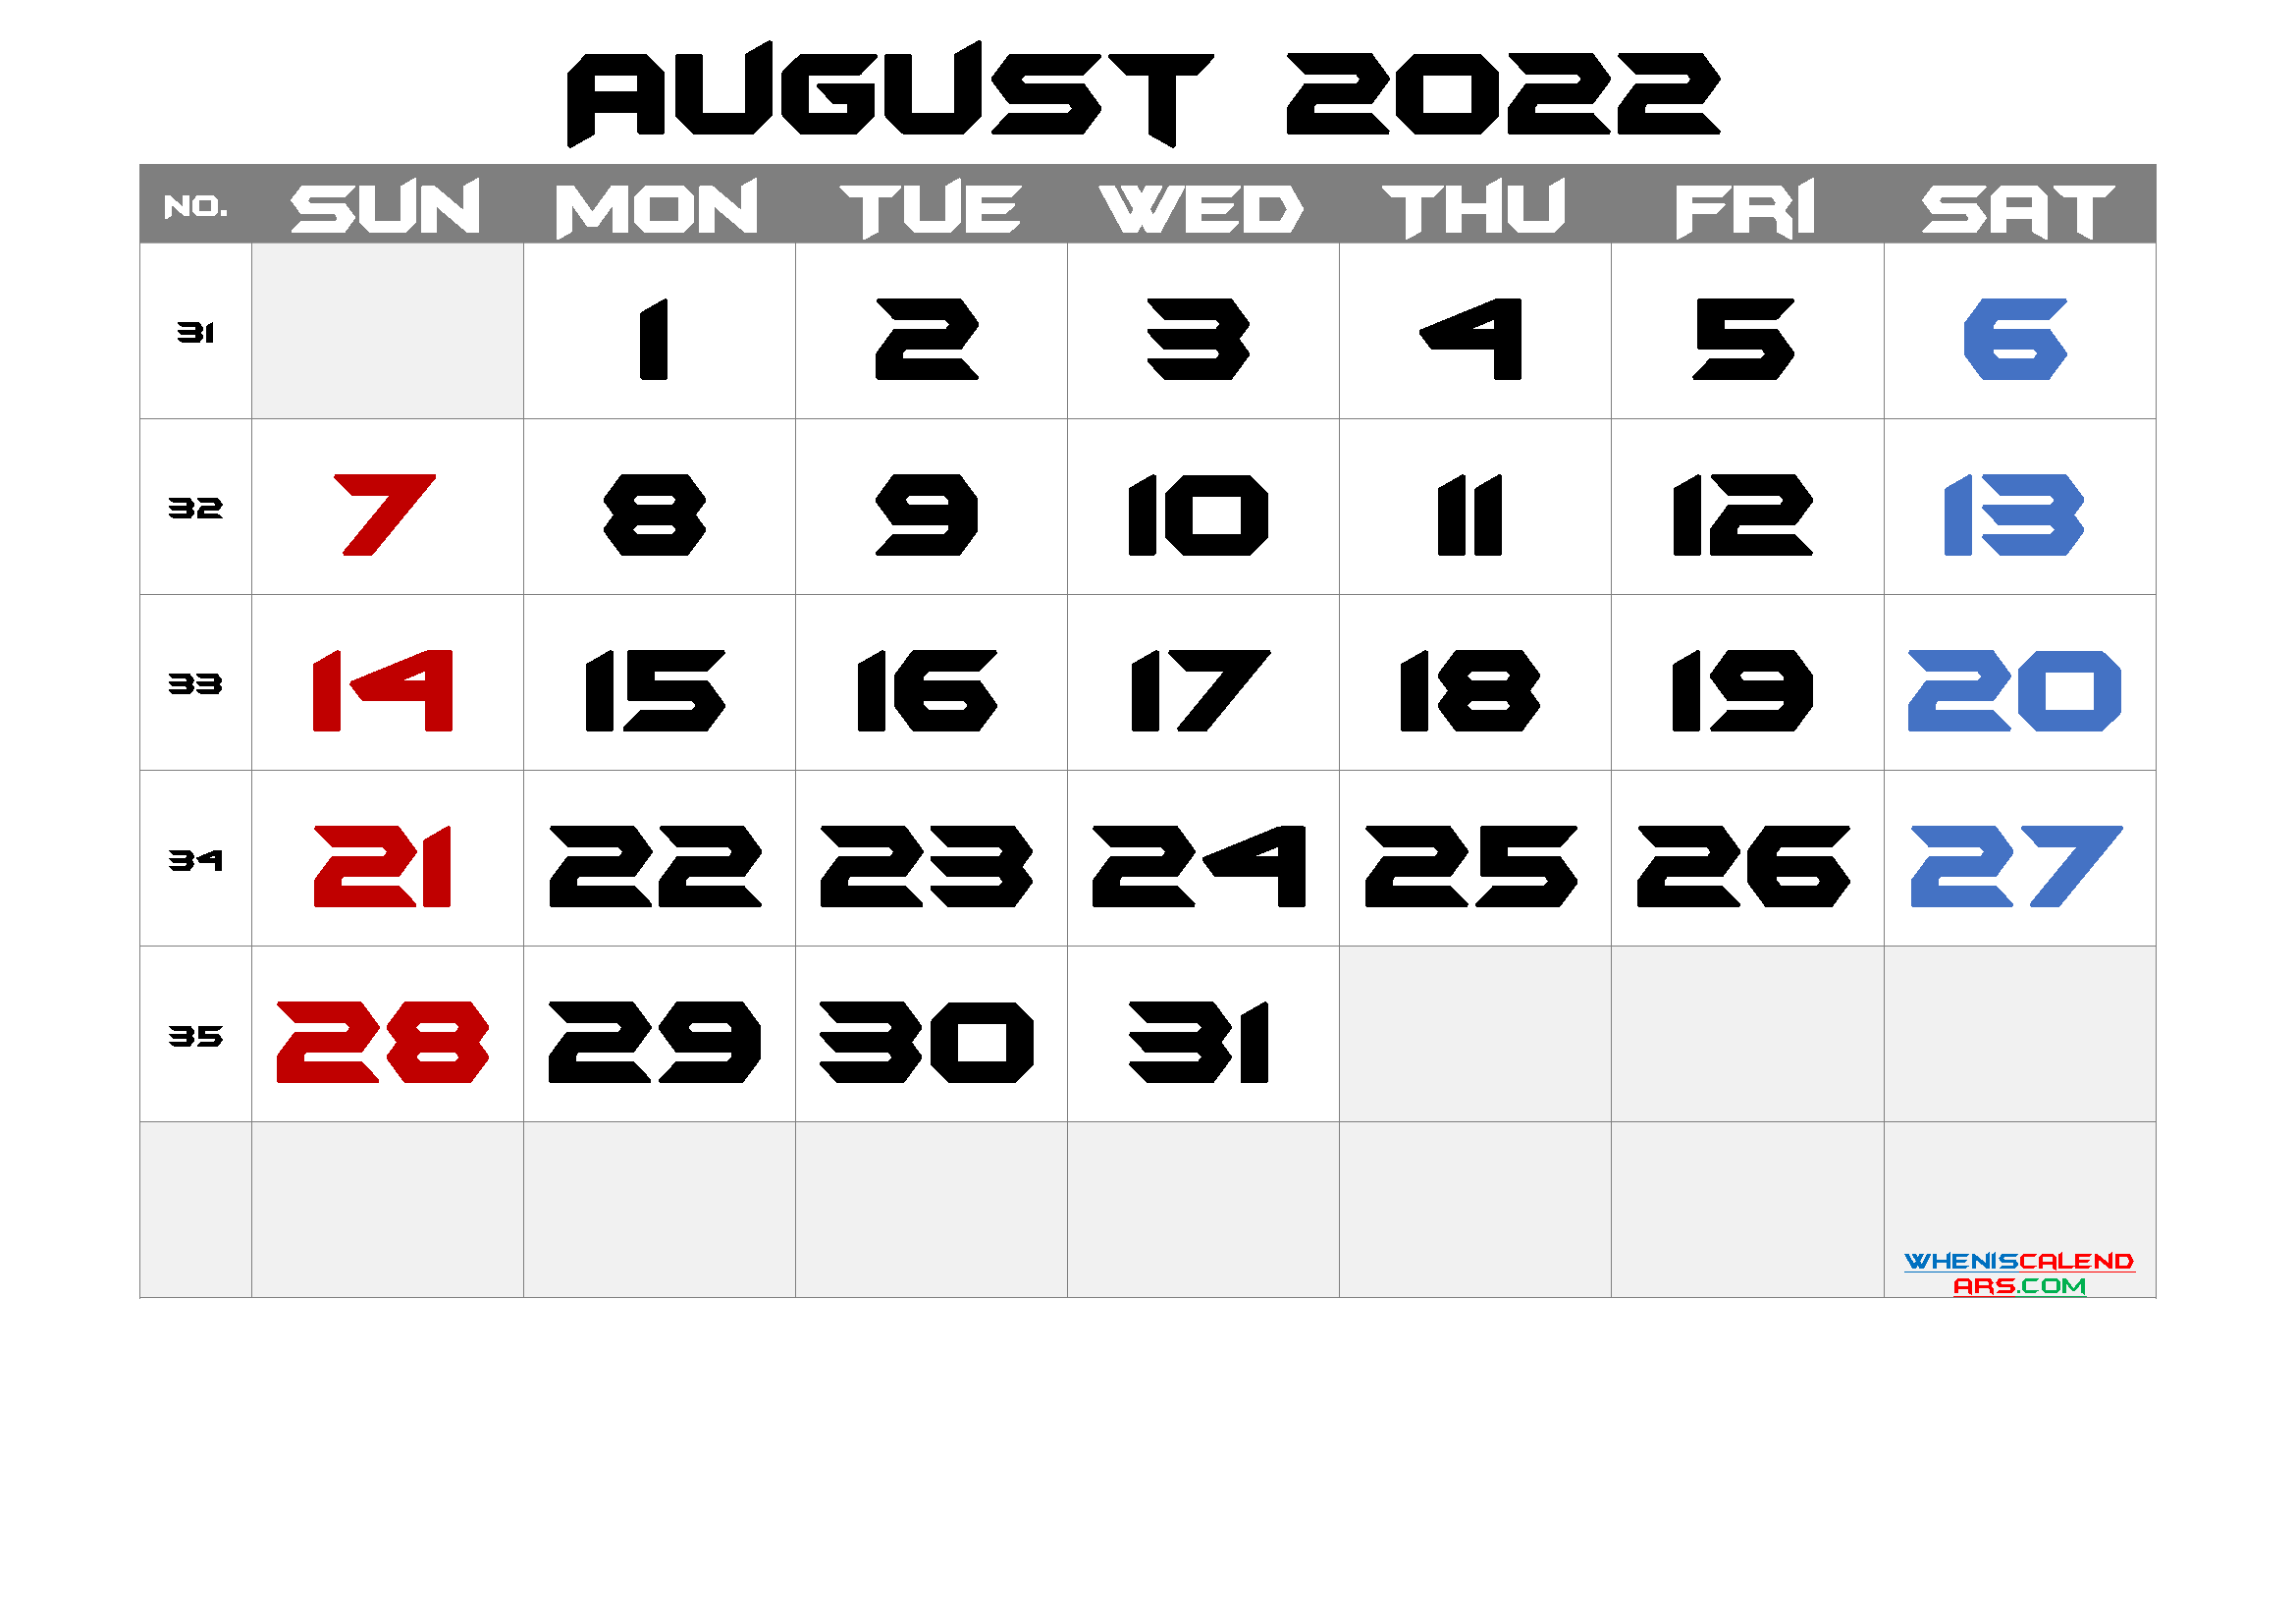 Free August 2022 Calendar Template